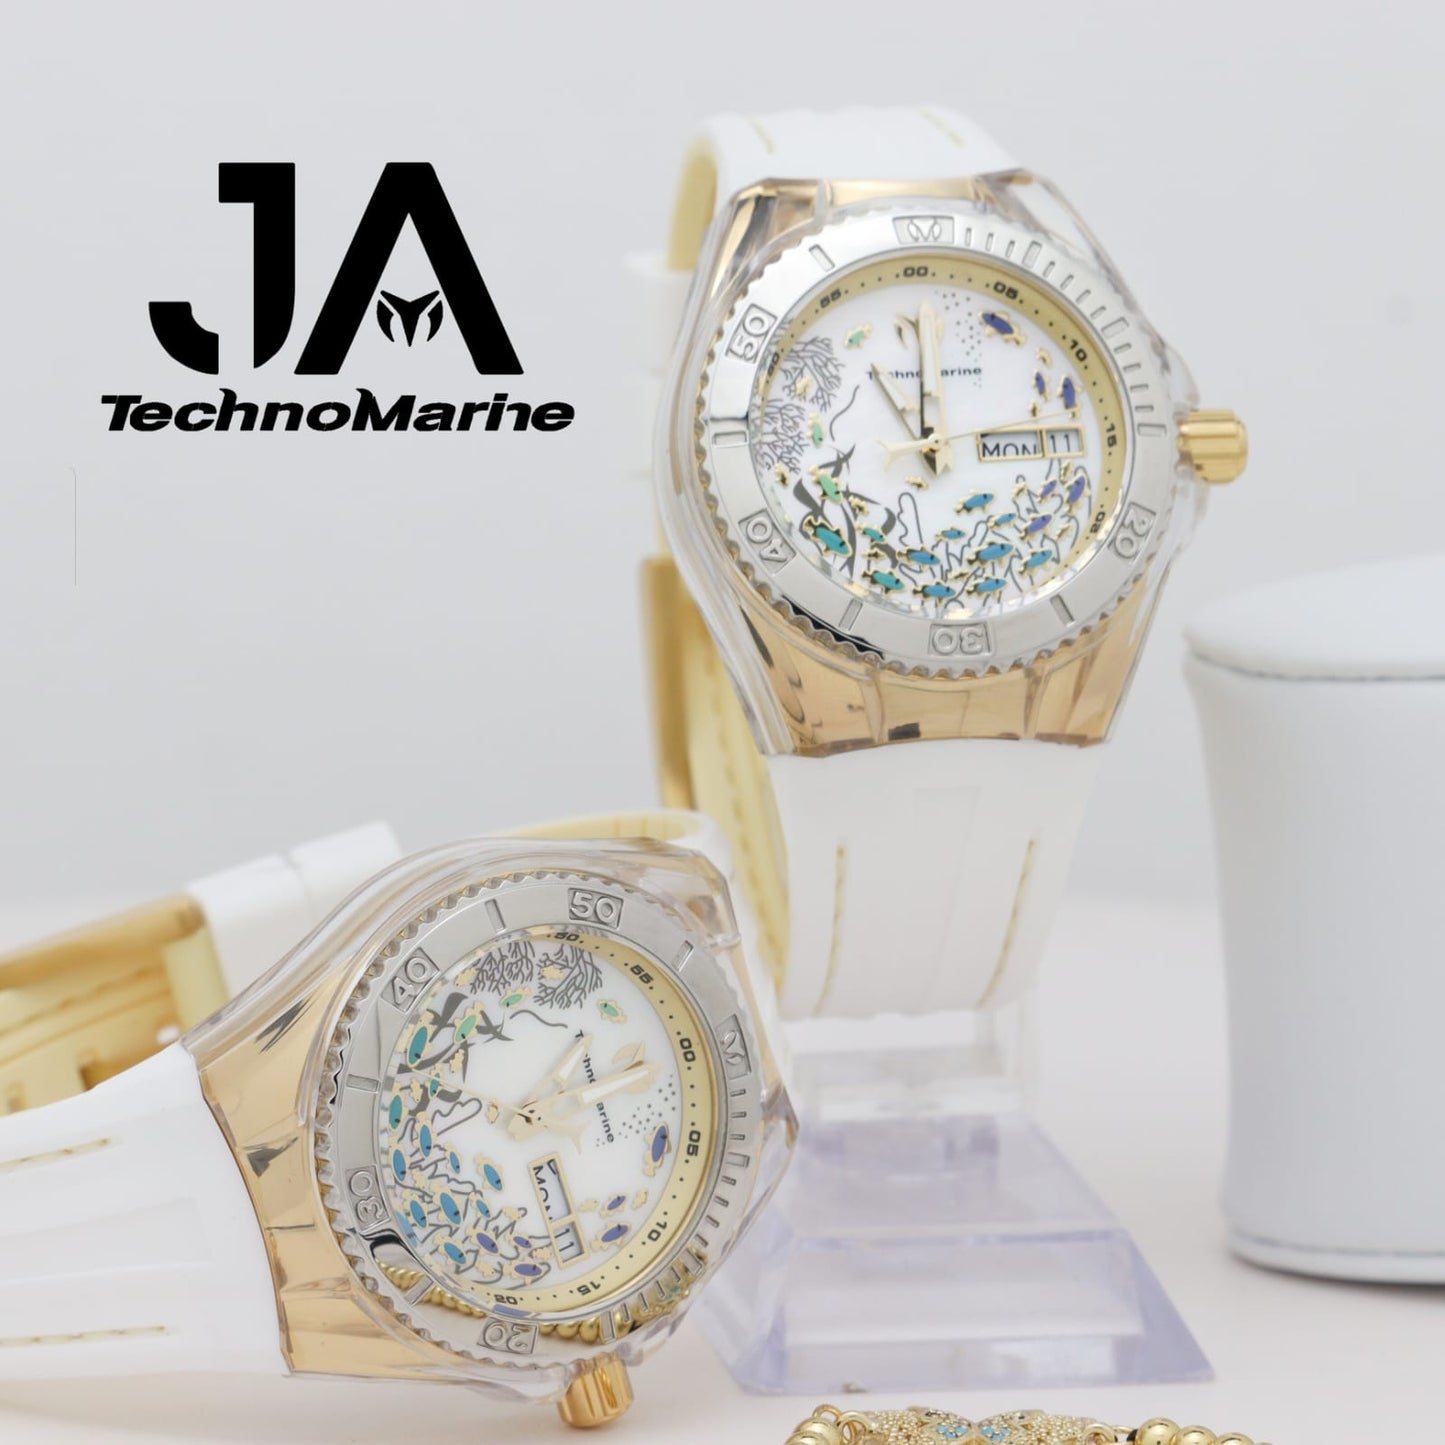 2×1 Dos TechnoMarine Women's 40mm Silicone  Band Steel Case Swiss Quartz Watch